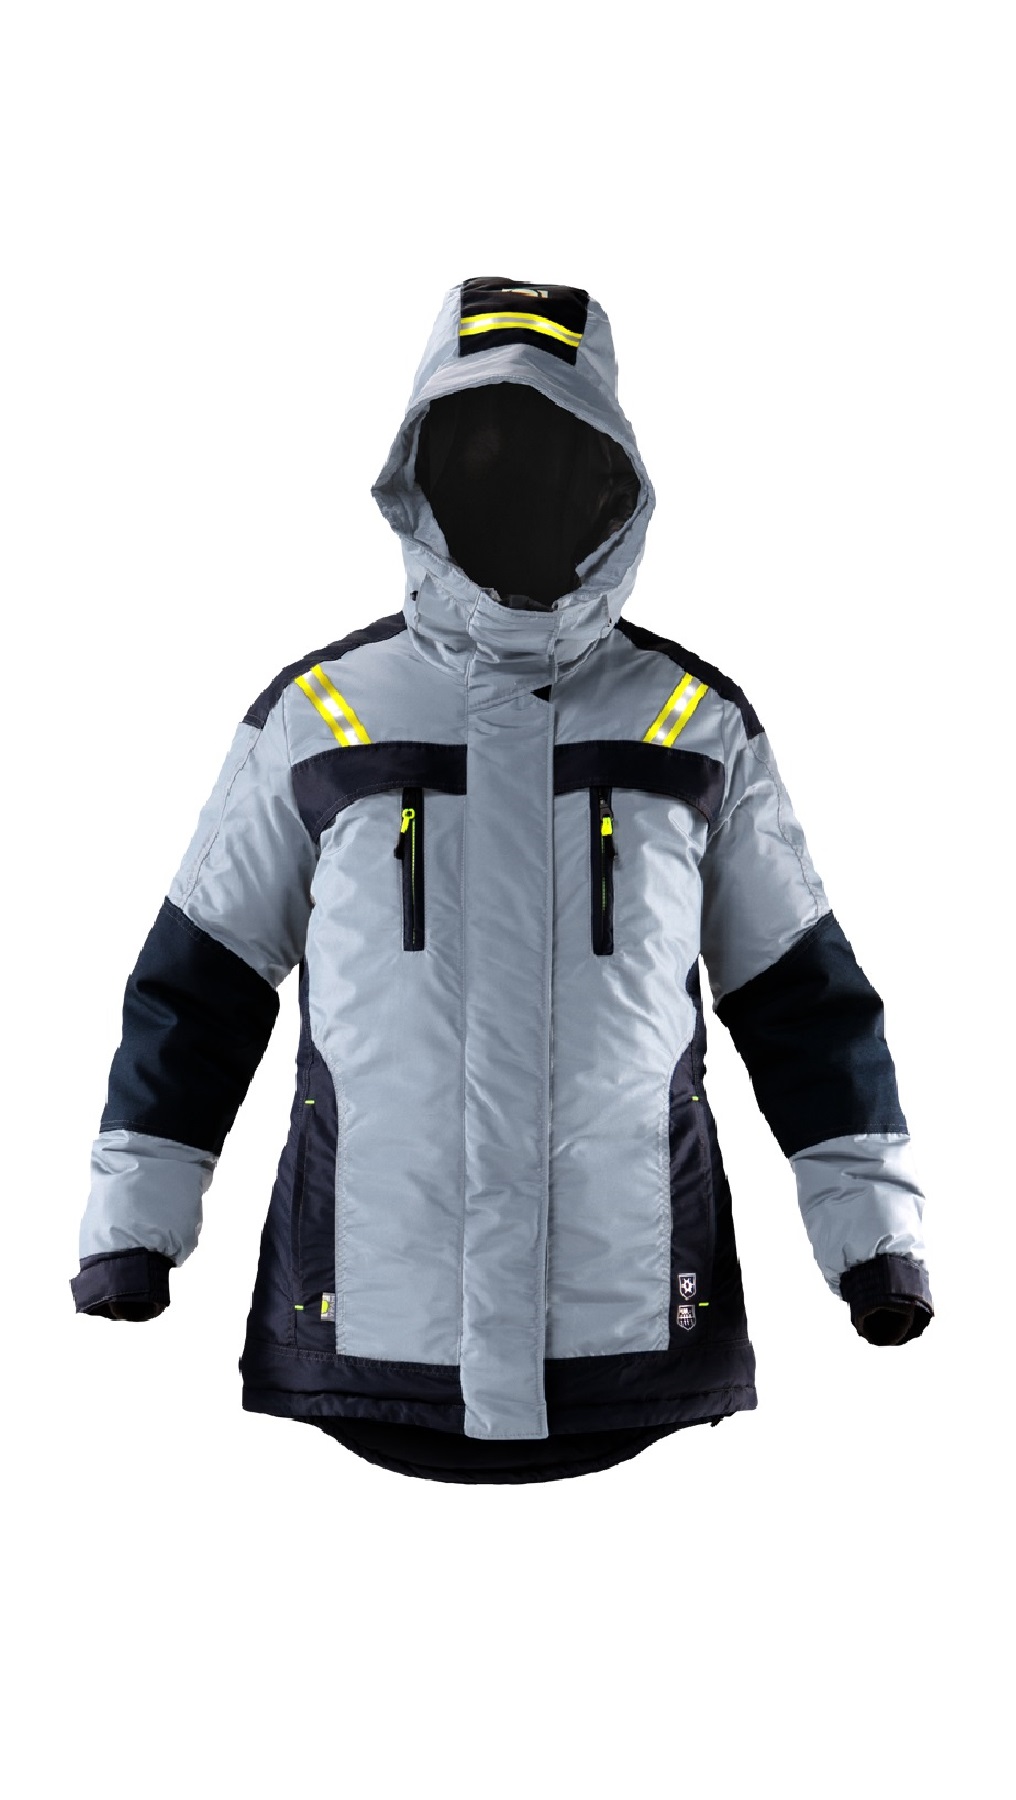 Зимняя куртка "ЛЕДИ УРАН" женская, удлиненная, утепленная, цвет: серый с черным, ткань: 100% ПЭ